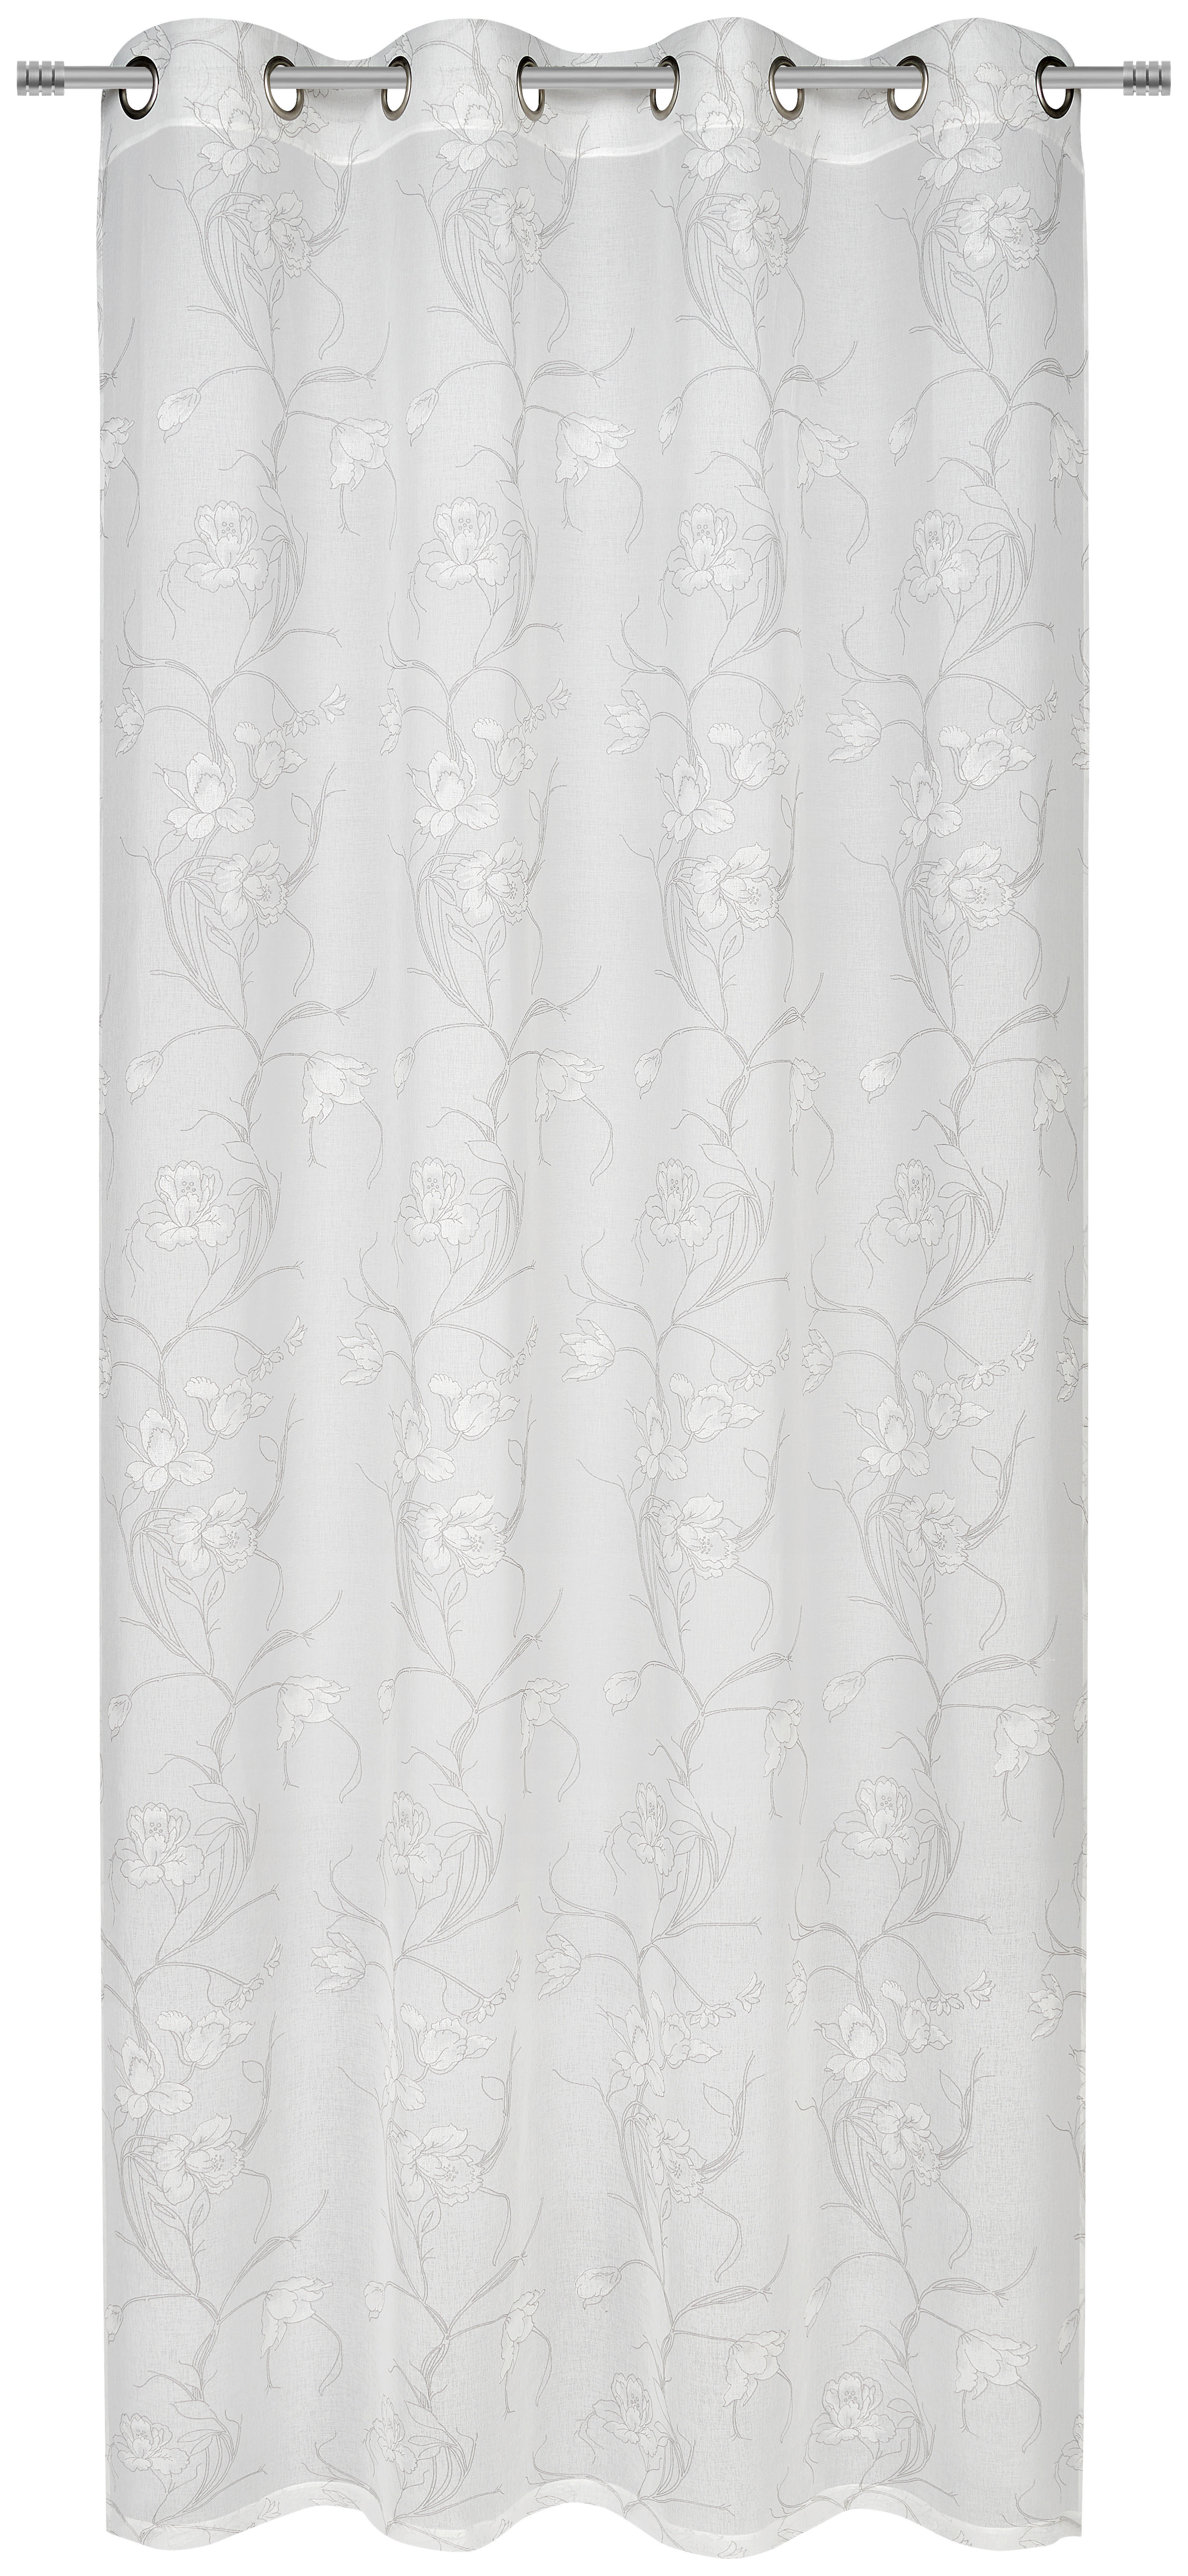 RINGLIS FÜGGÖNY Részben áttetsző  - Szürke/Fehér, Design, Textil (135/245cm) - Esposa